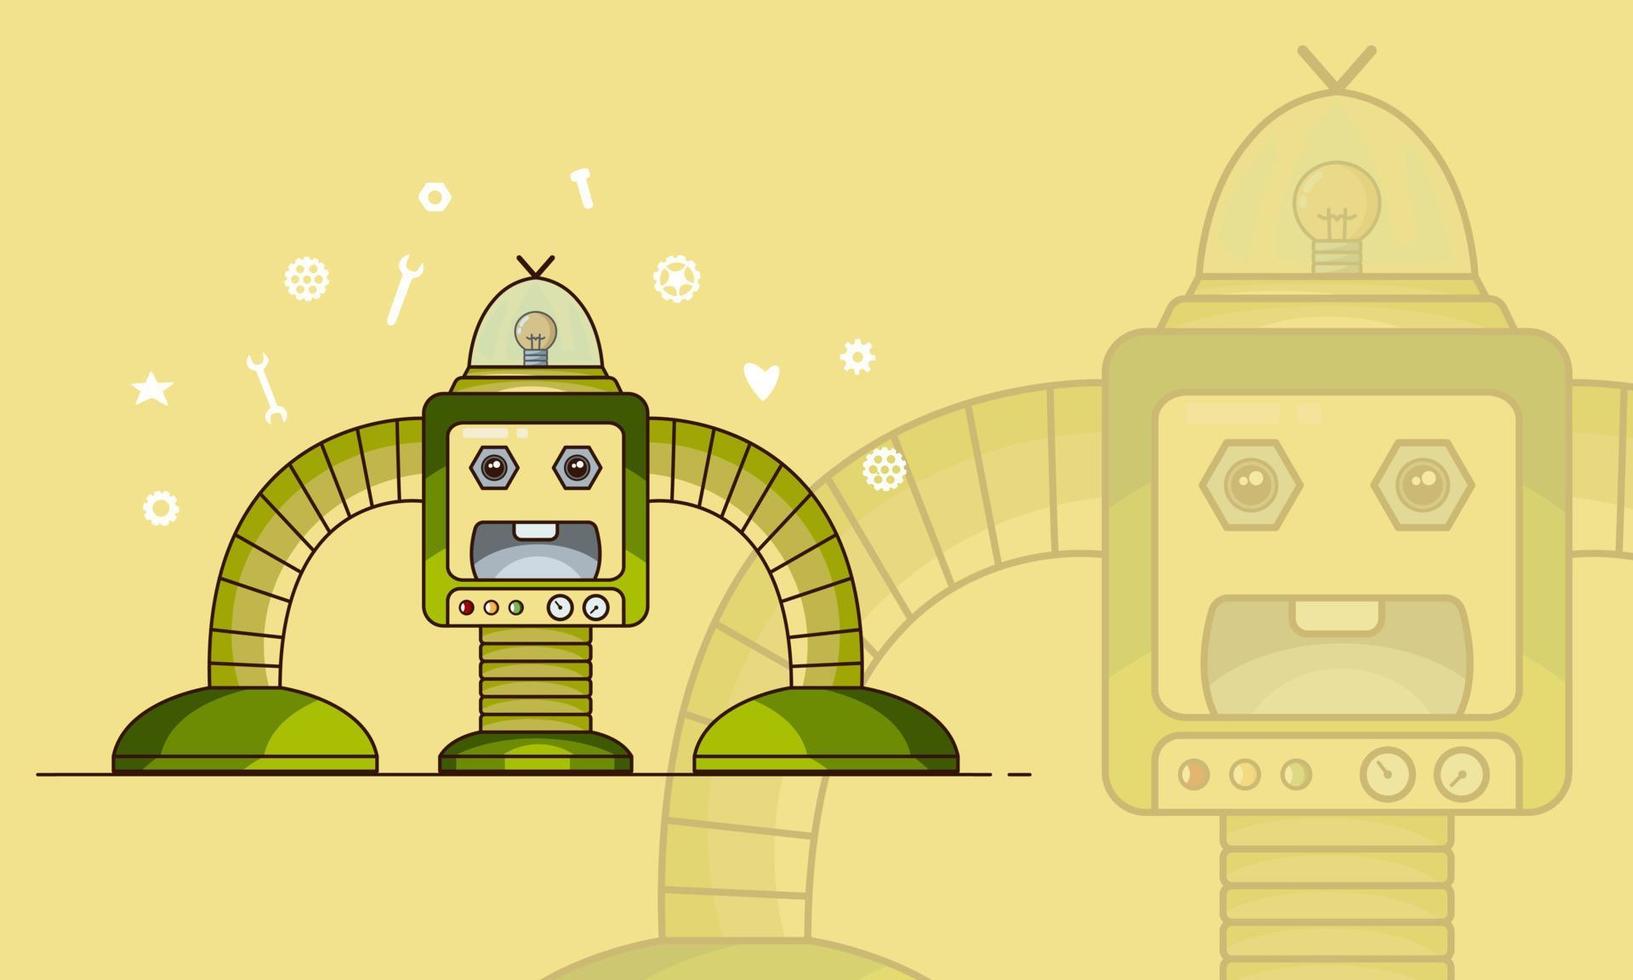 söt grön robot på gul bakgrund. grafisk vektorillustration. cyborg futuristisk design robotleksaksrobot. robotteknologi maskin framtida vetenskap leksak. söt element ikon karaktär, tecknad robot. vektor